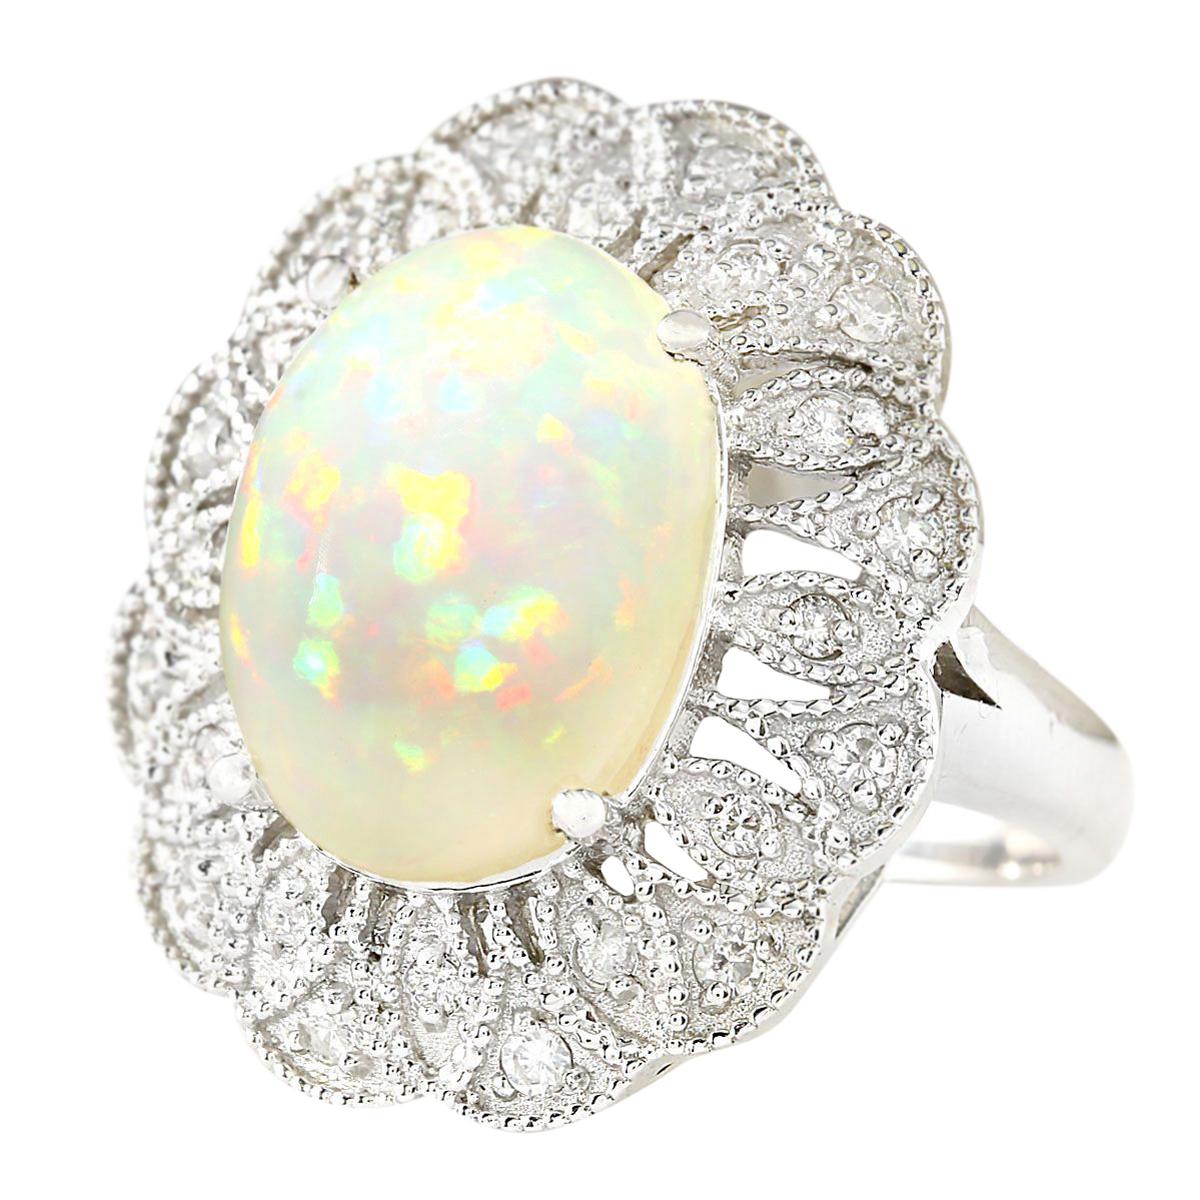 6.32 Carat Natural Opal 14 Karat White Gold Diamond Ring
Stamped: 14K White Gold
Total Ring Weight: 10.5 Grams
Total Natural Opal Weight is 5.82 Carat (Measures: 16.00x12.00 mm)
Color: Multicolor
Total Natural Diamond Weight is 0.50 Carat
Color: